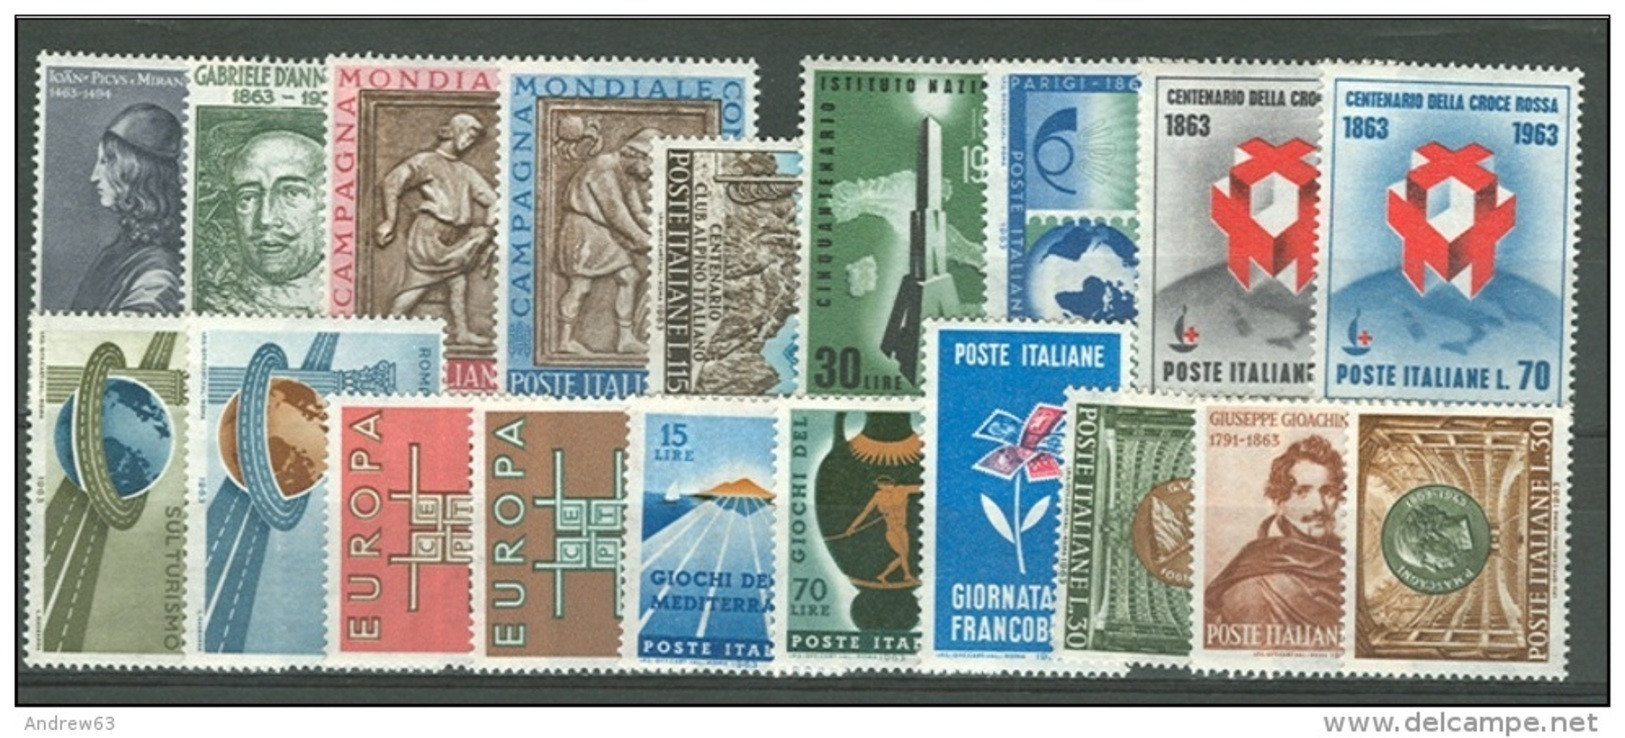 ITALIA REPUBBLICA - 1963 - Annata Completa - 19 Valori - Complete Year - ** MNH/VF - Annate Complete